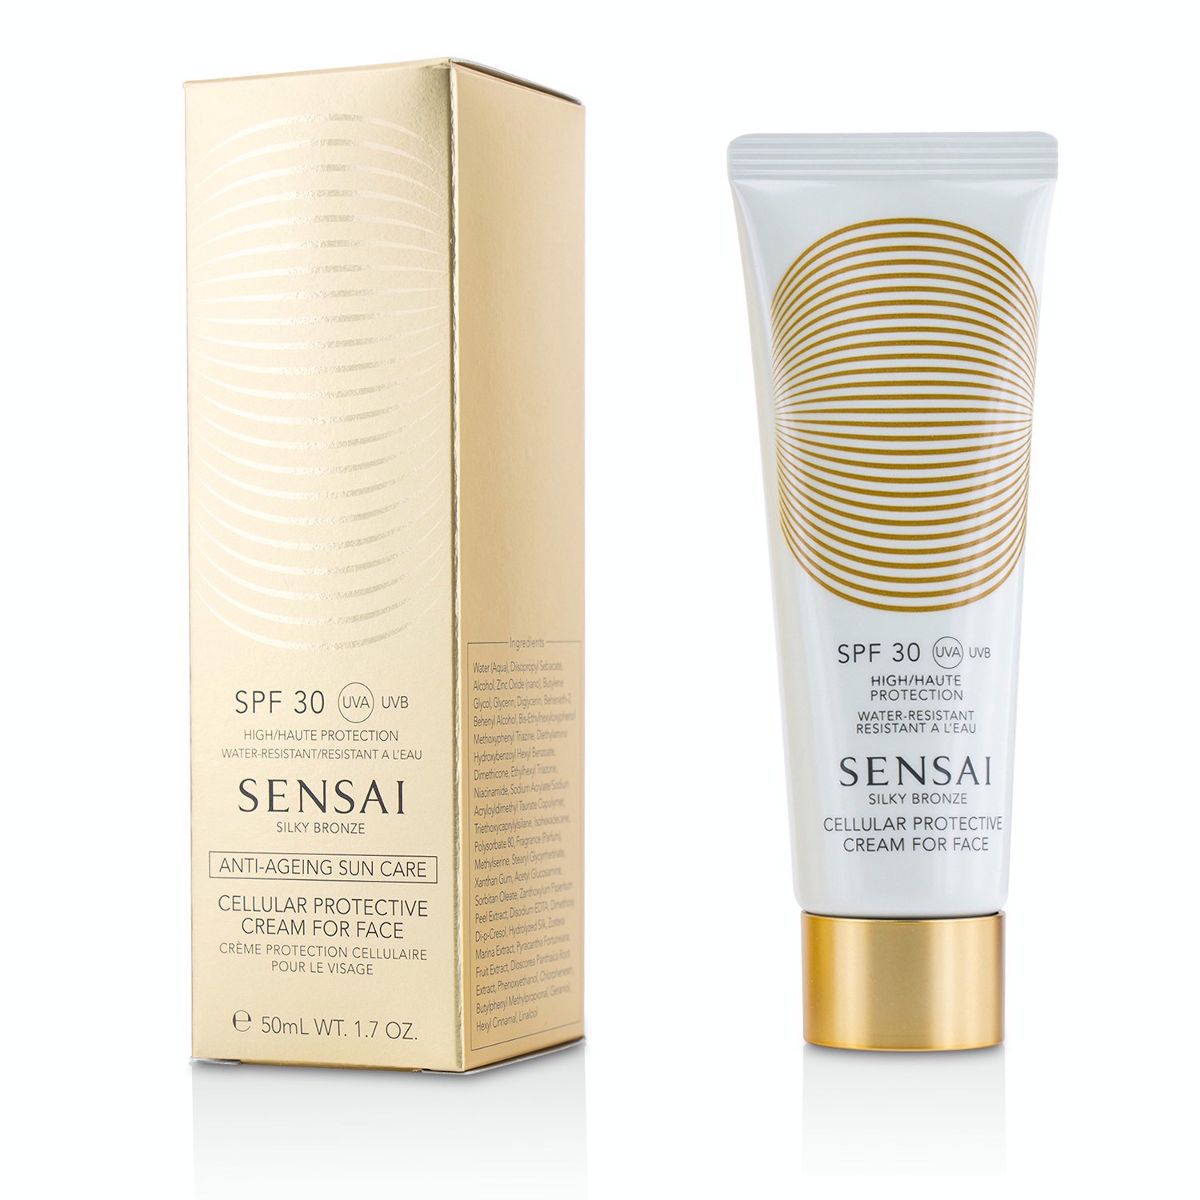 Sensai Silky Bronze Cellular Protective Cream For Face SPF30 Kanebo Image